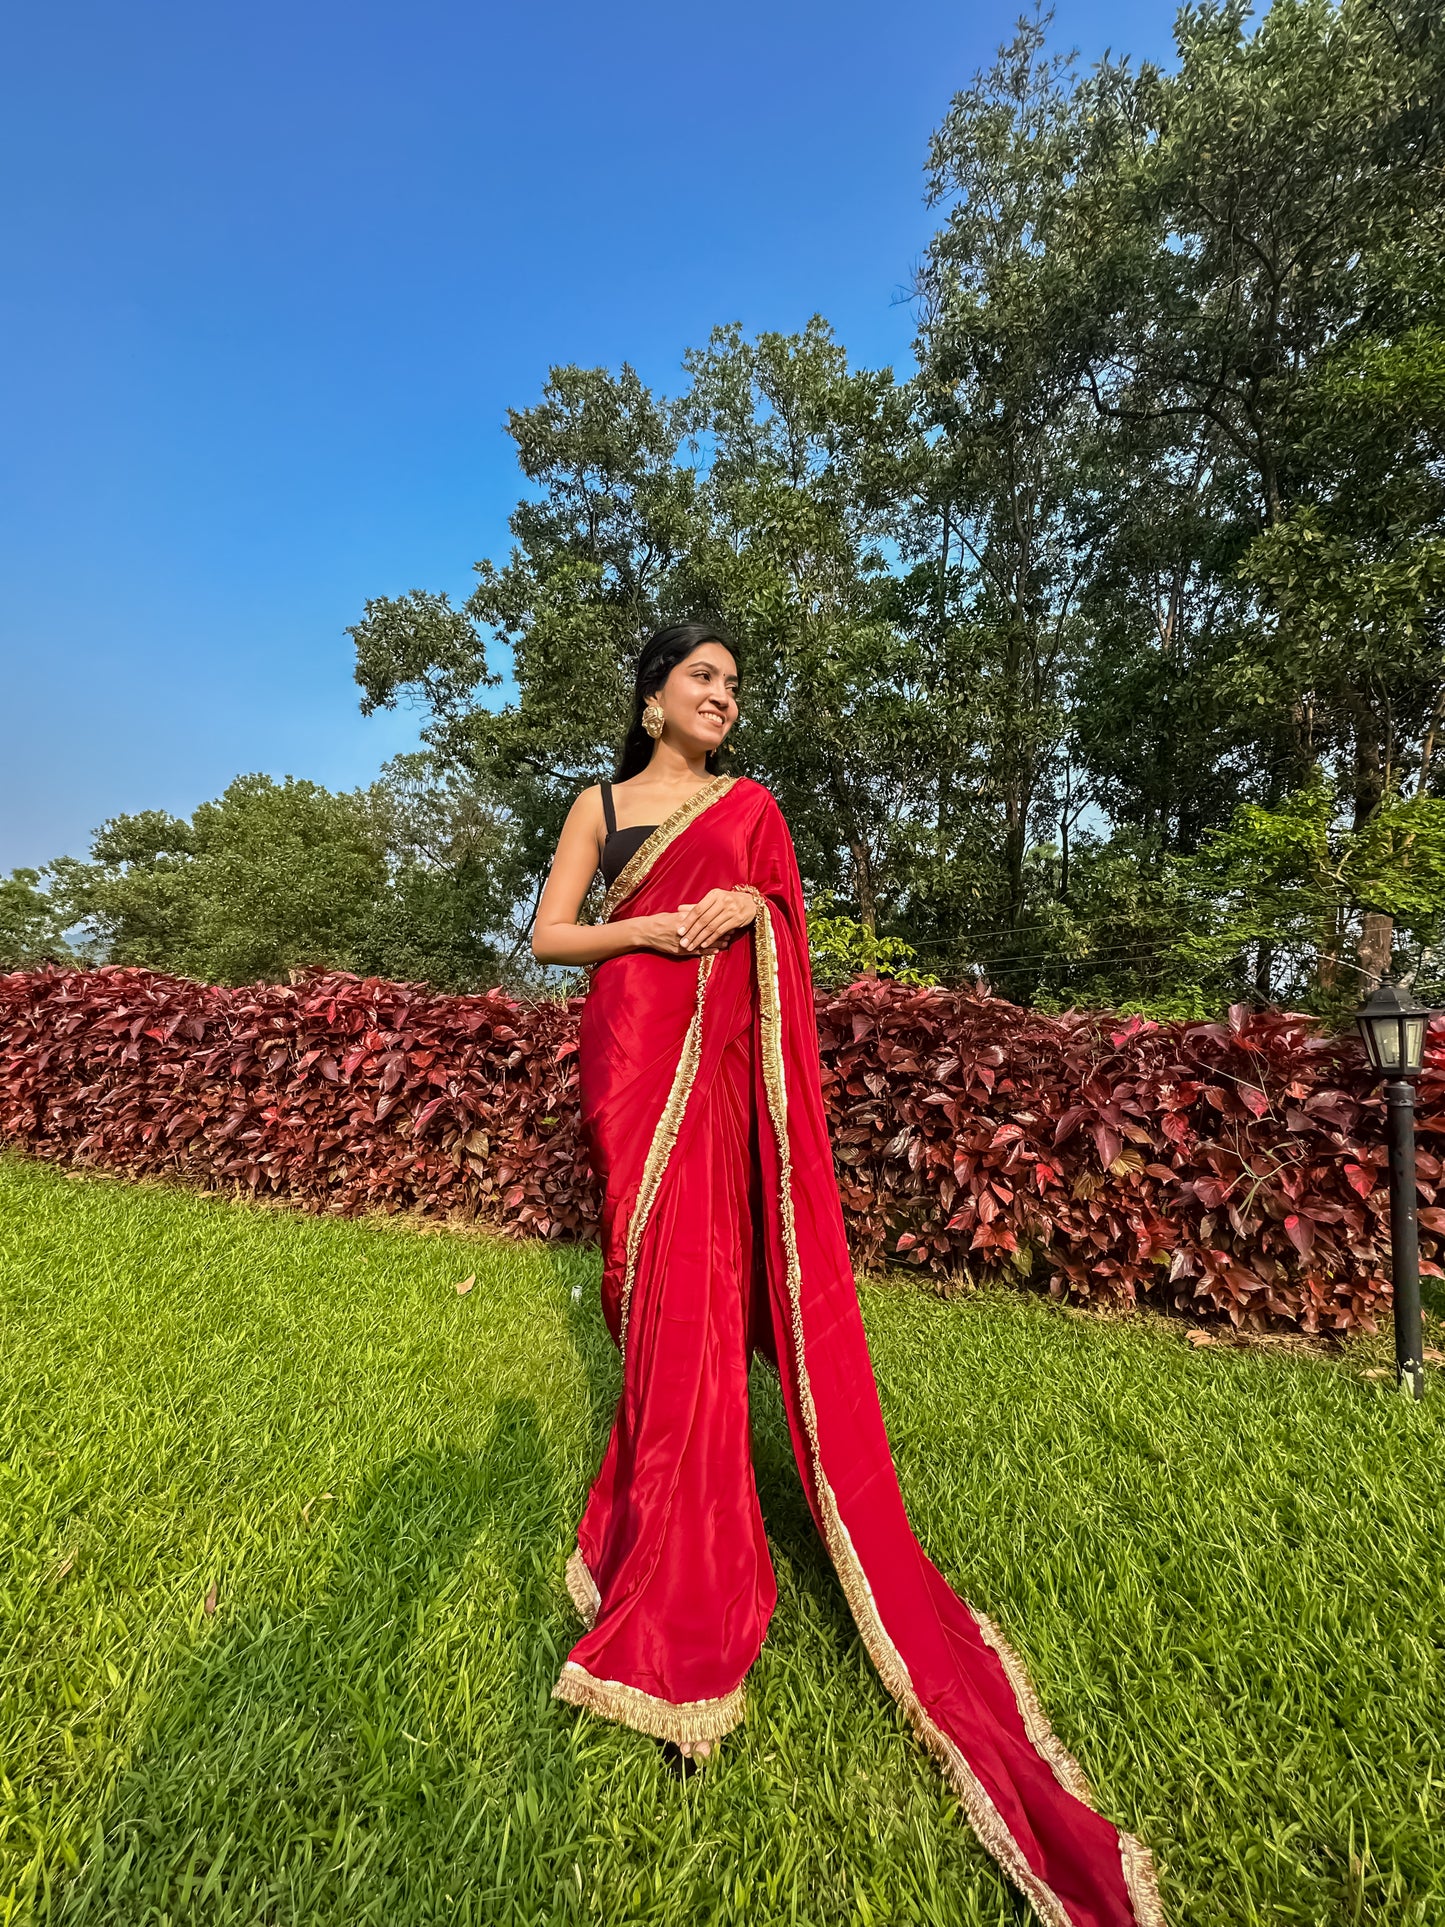 Sindhuri Saundarya (सिंधूरी सौंदर्य) - Vermilion Beauty